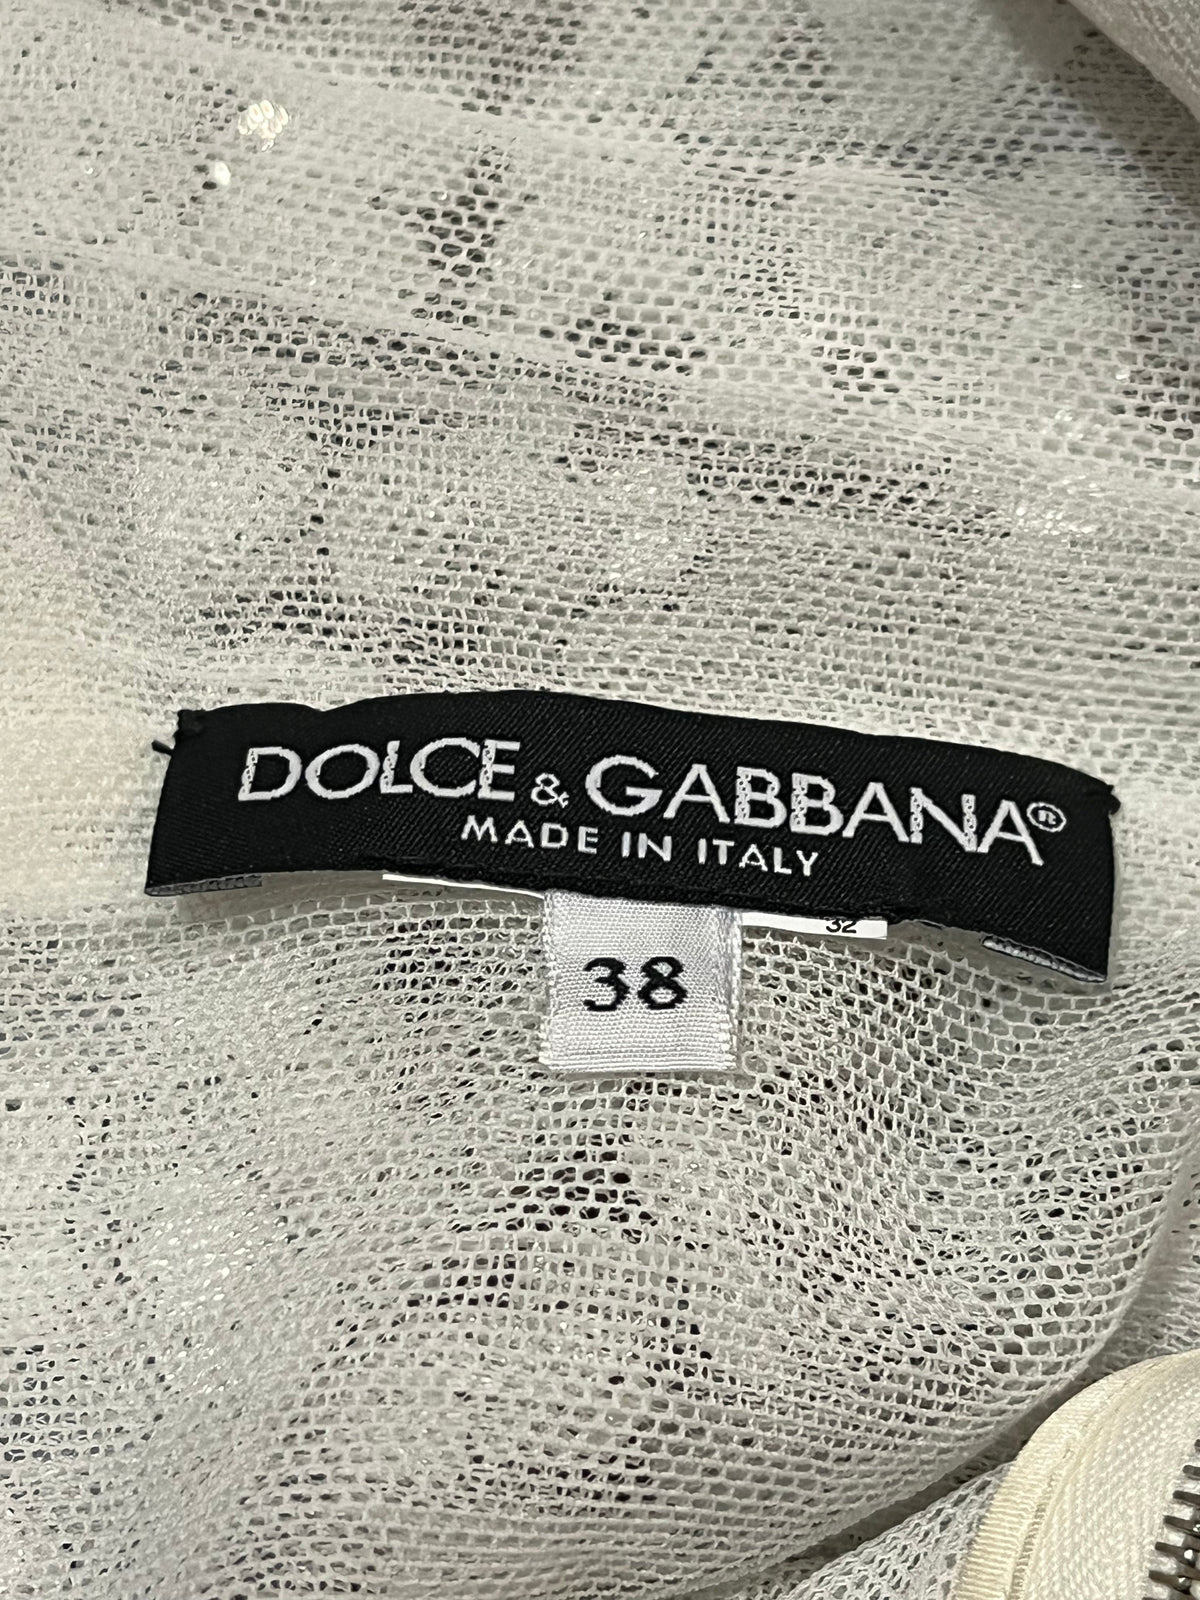 Dolce &amp; Gabbana Sequin Dress SZ 38